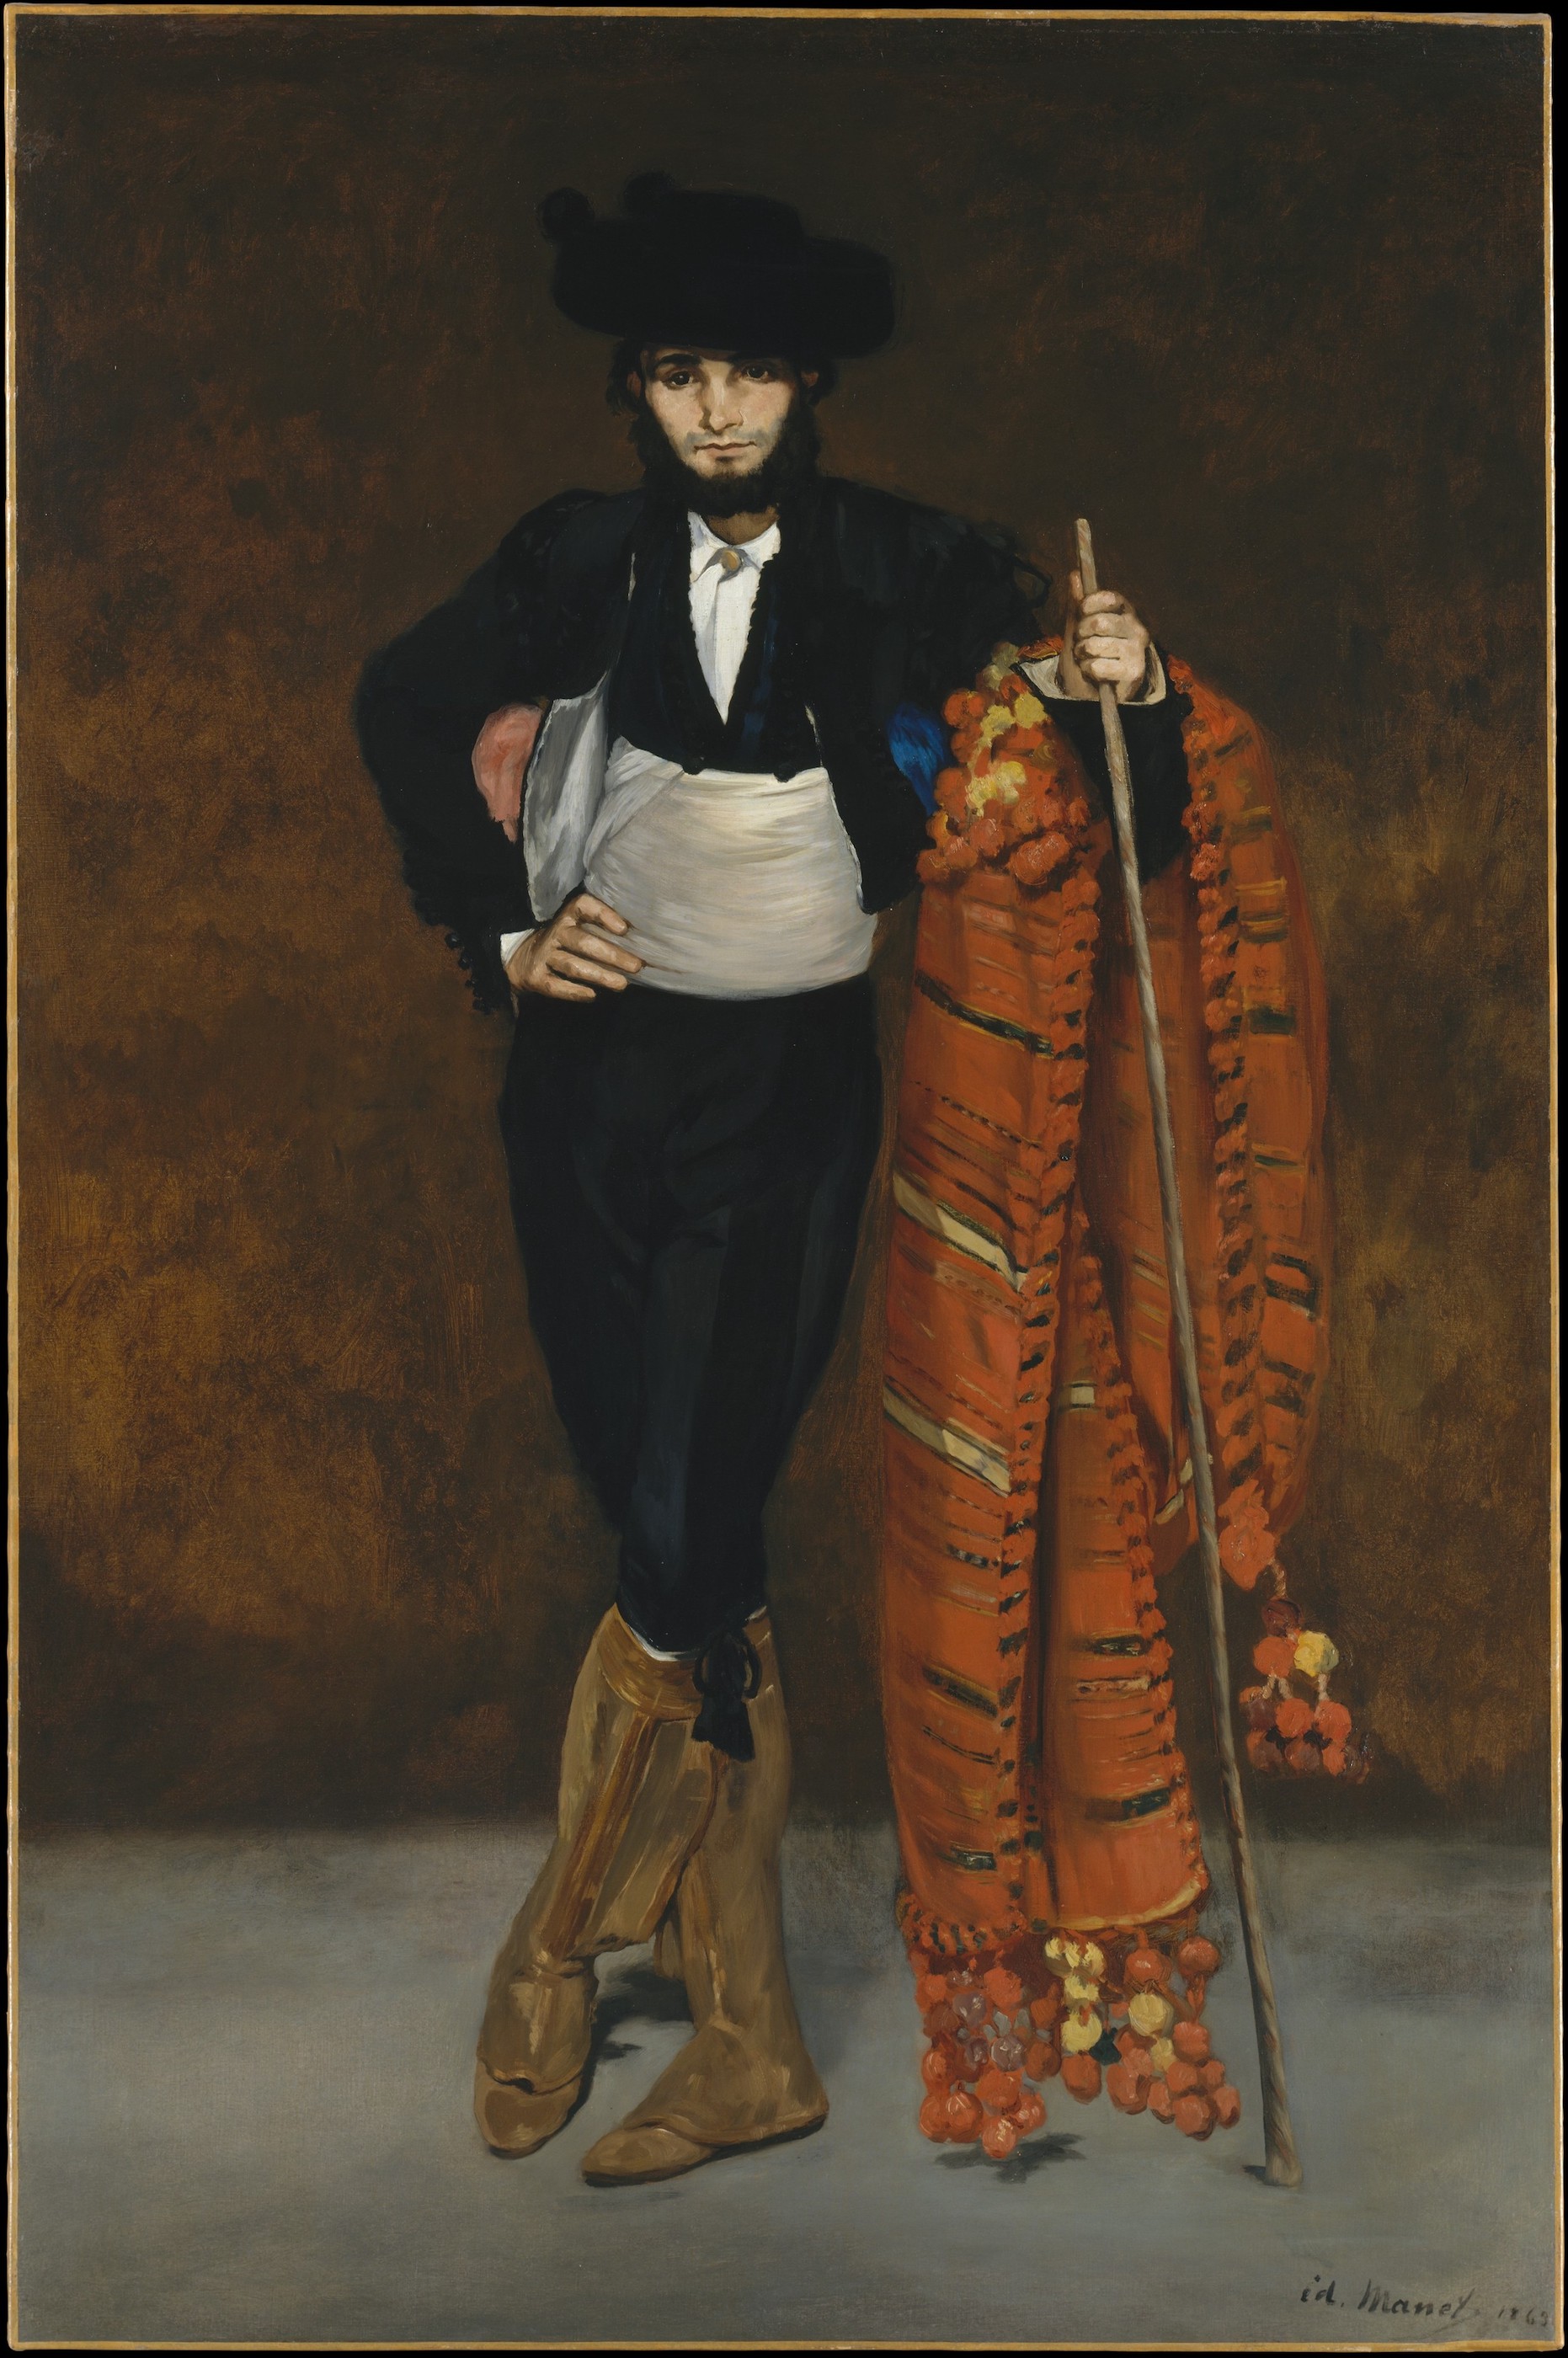 마호 복장을 한 젊은이 by Édouard Manet - 1863년 - 188 x 124.8 cm 